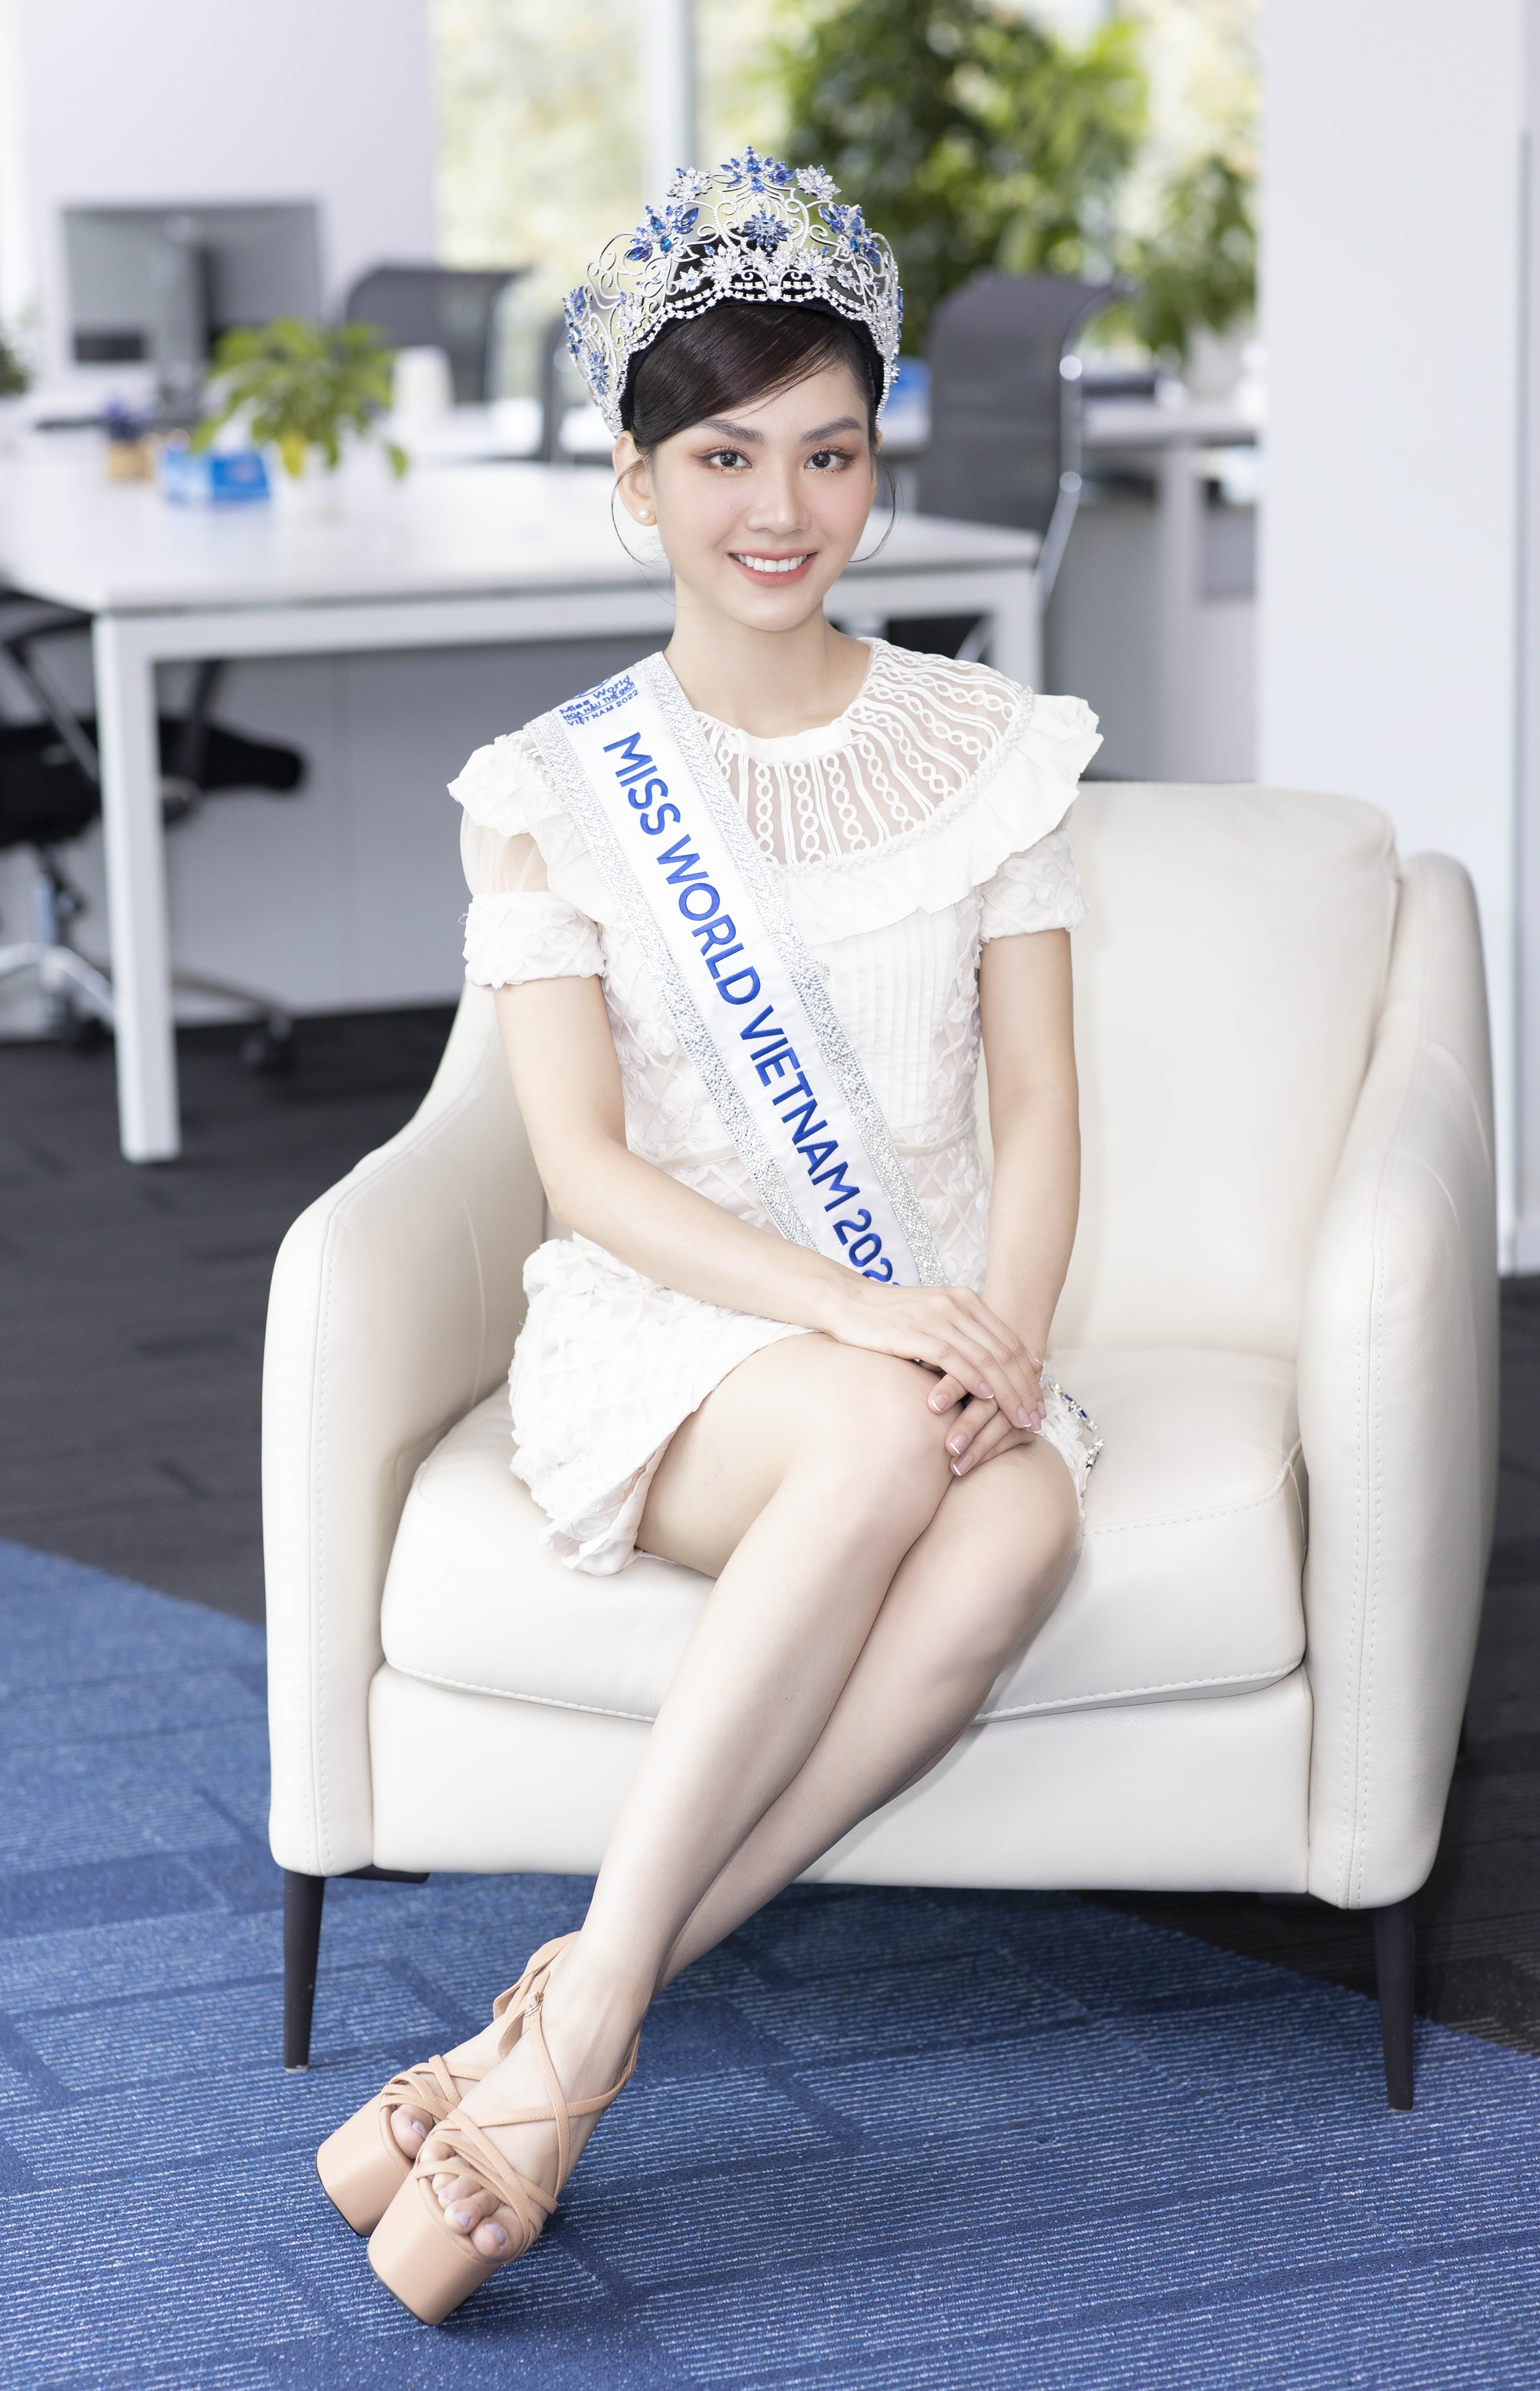 Hoa hậu Mai Phương phản hồi tin được dọn đường để đăng quang - Ảnh 7.